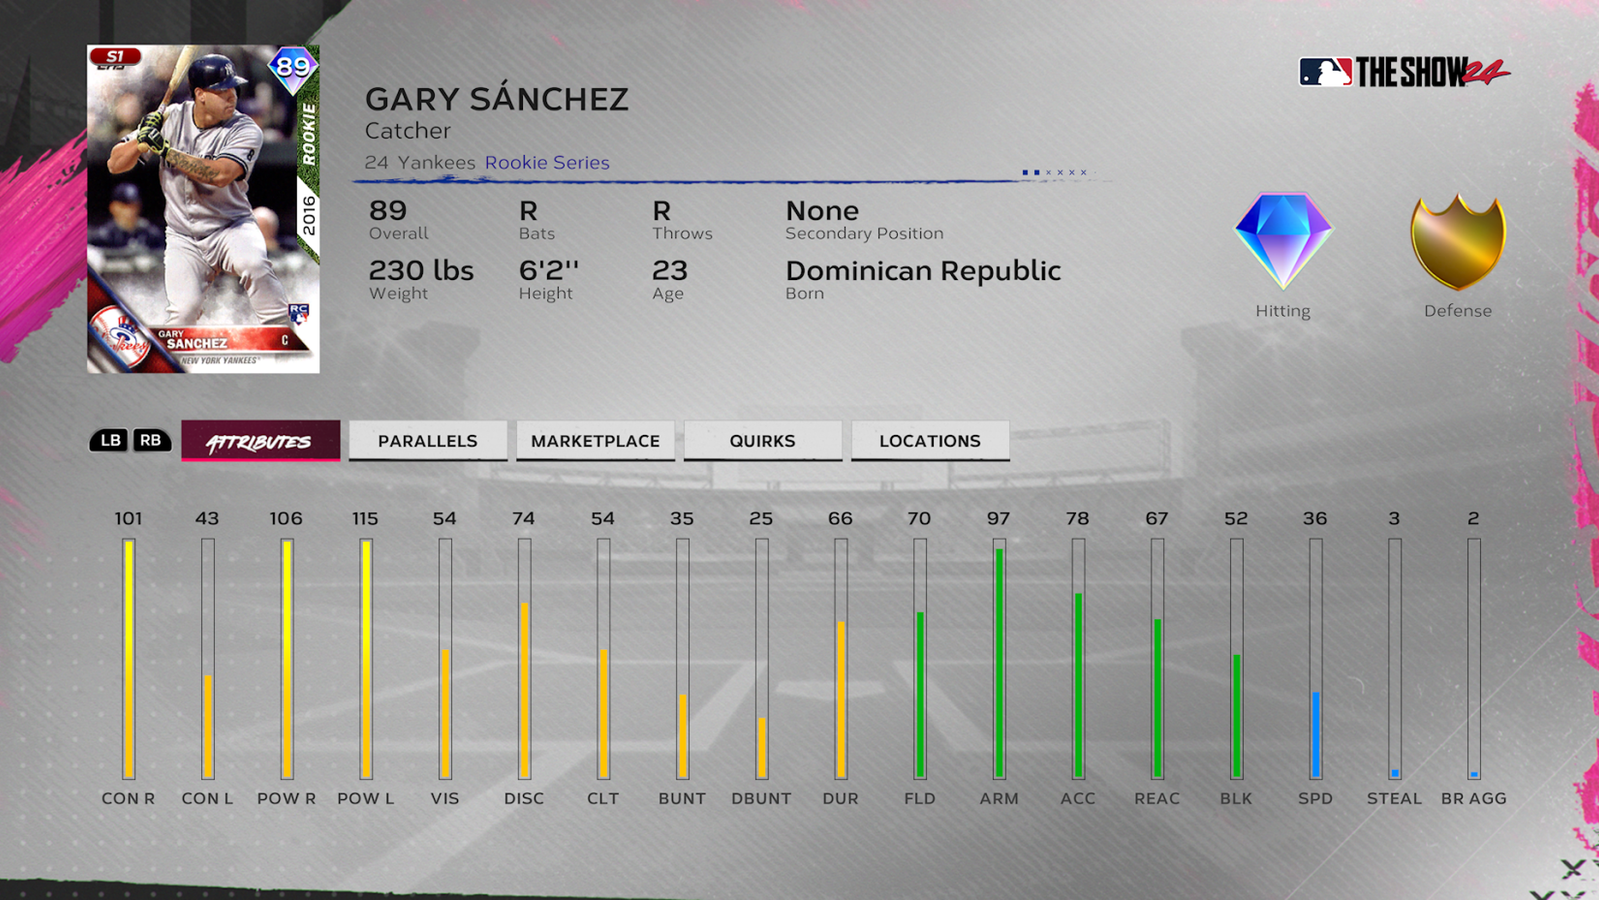 MLB ザ ショー 24 チーム アフィニティ ゲイリー サンチェス カード